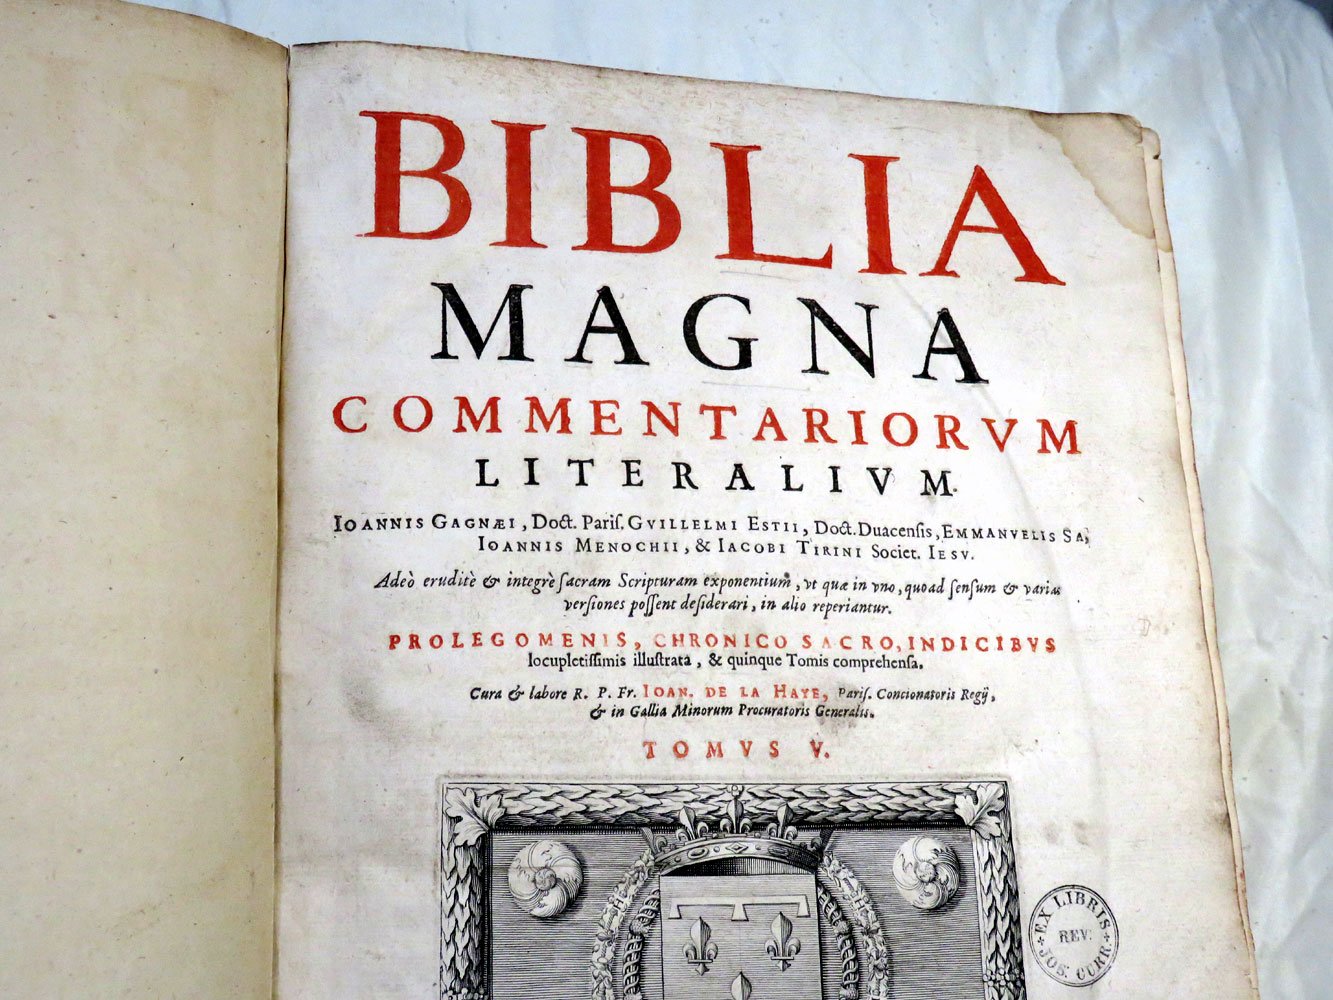 Bible magna